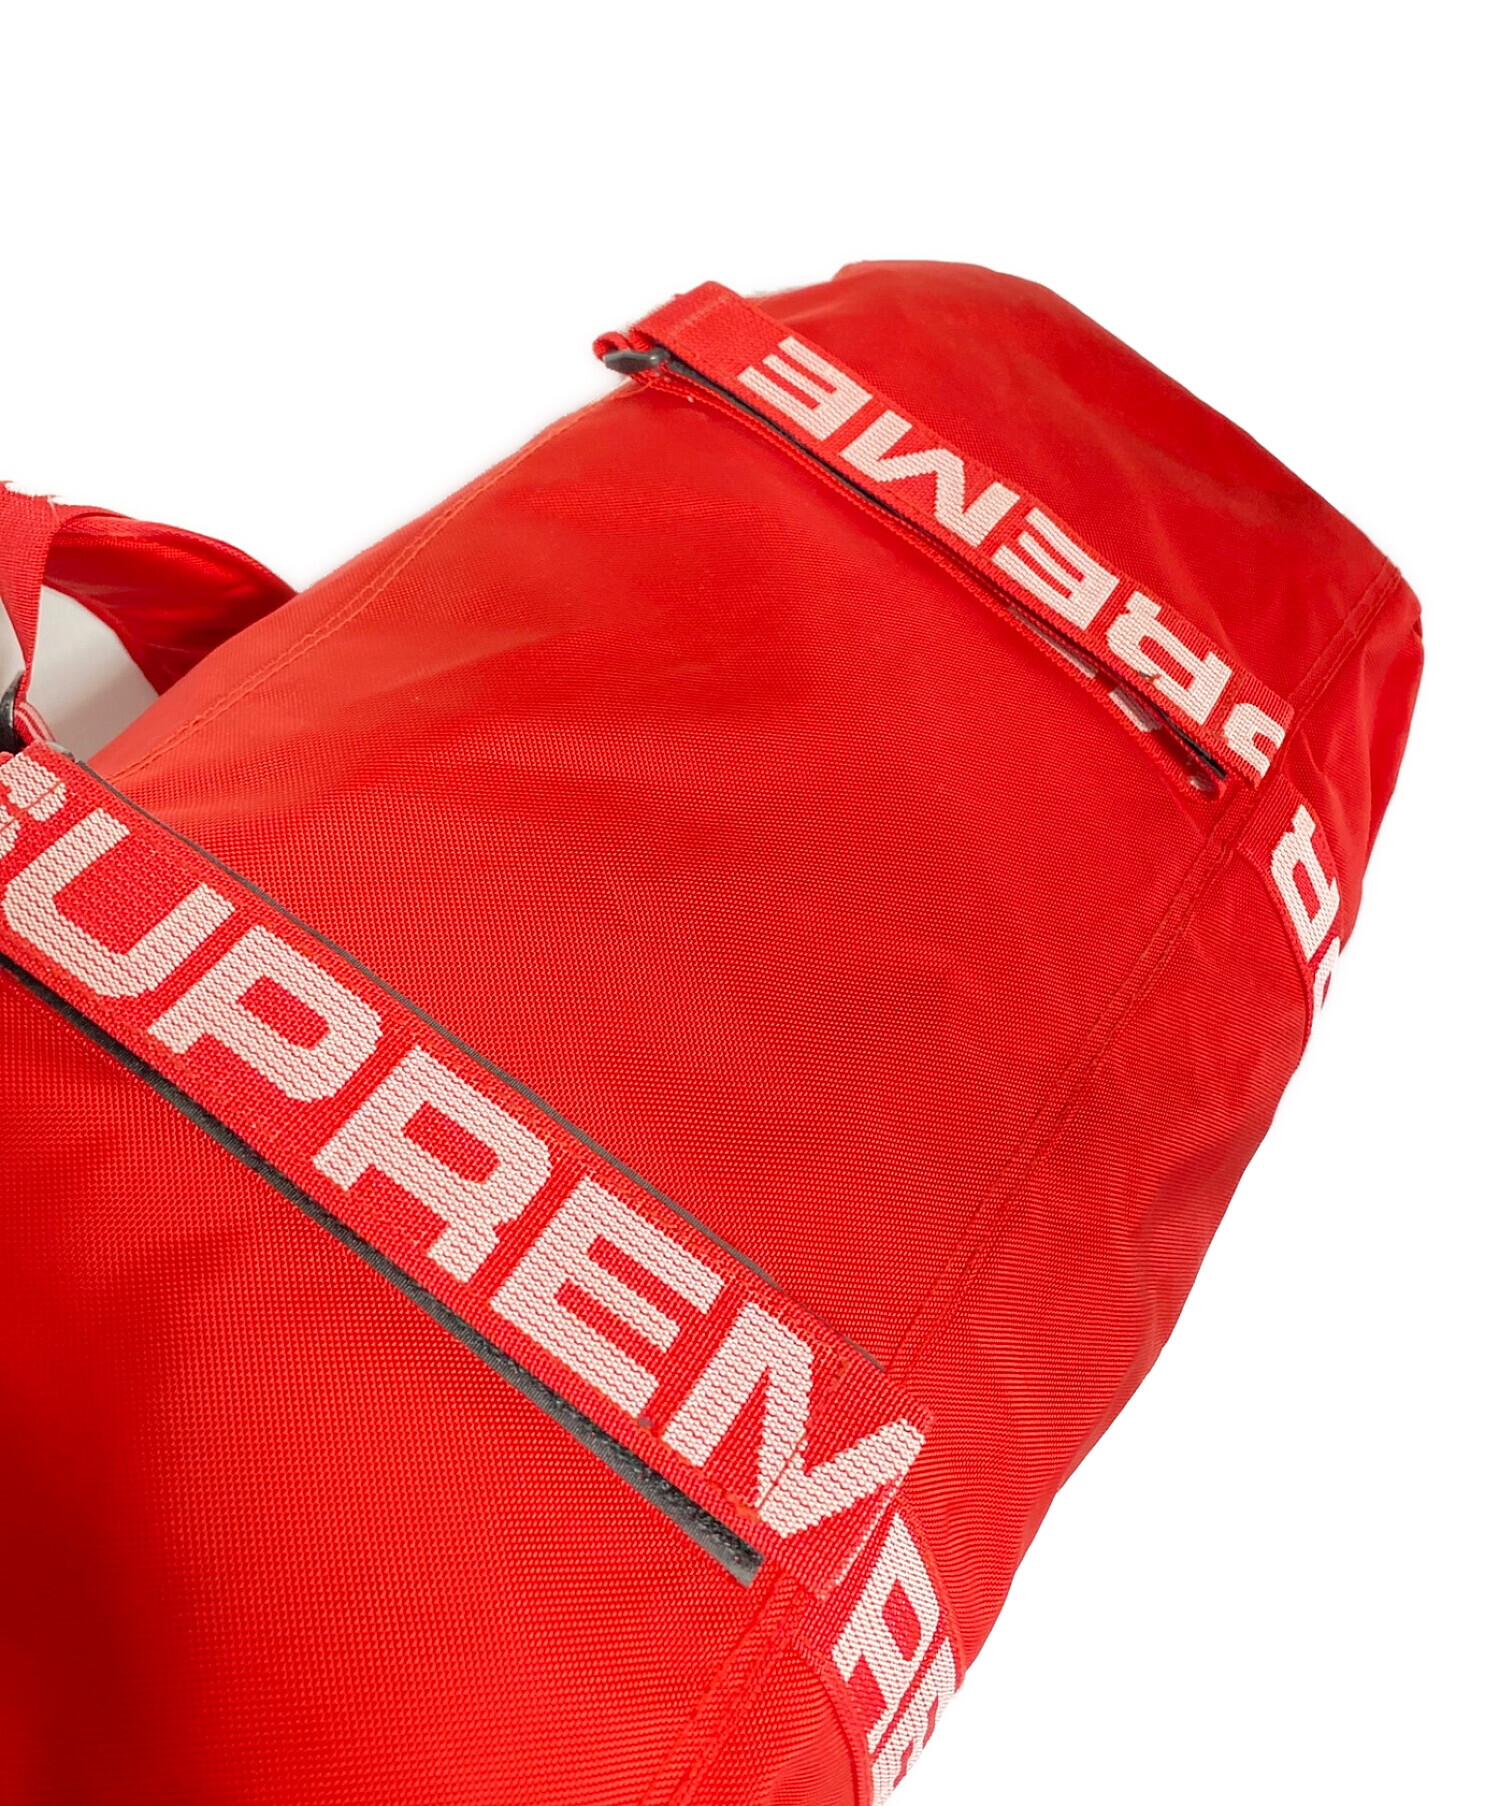 SUPREME (シュプリーム) Large Duffle Bag レッド サイズ:-